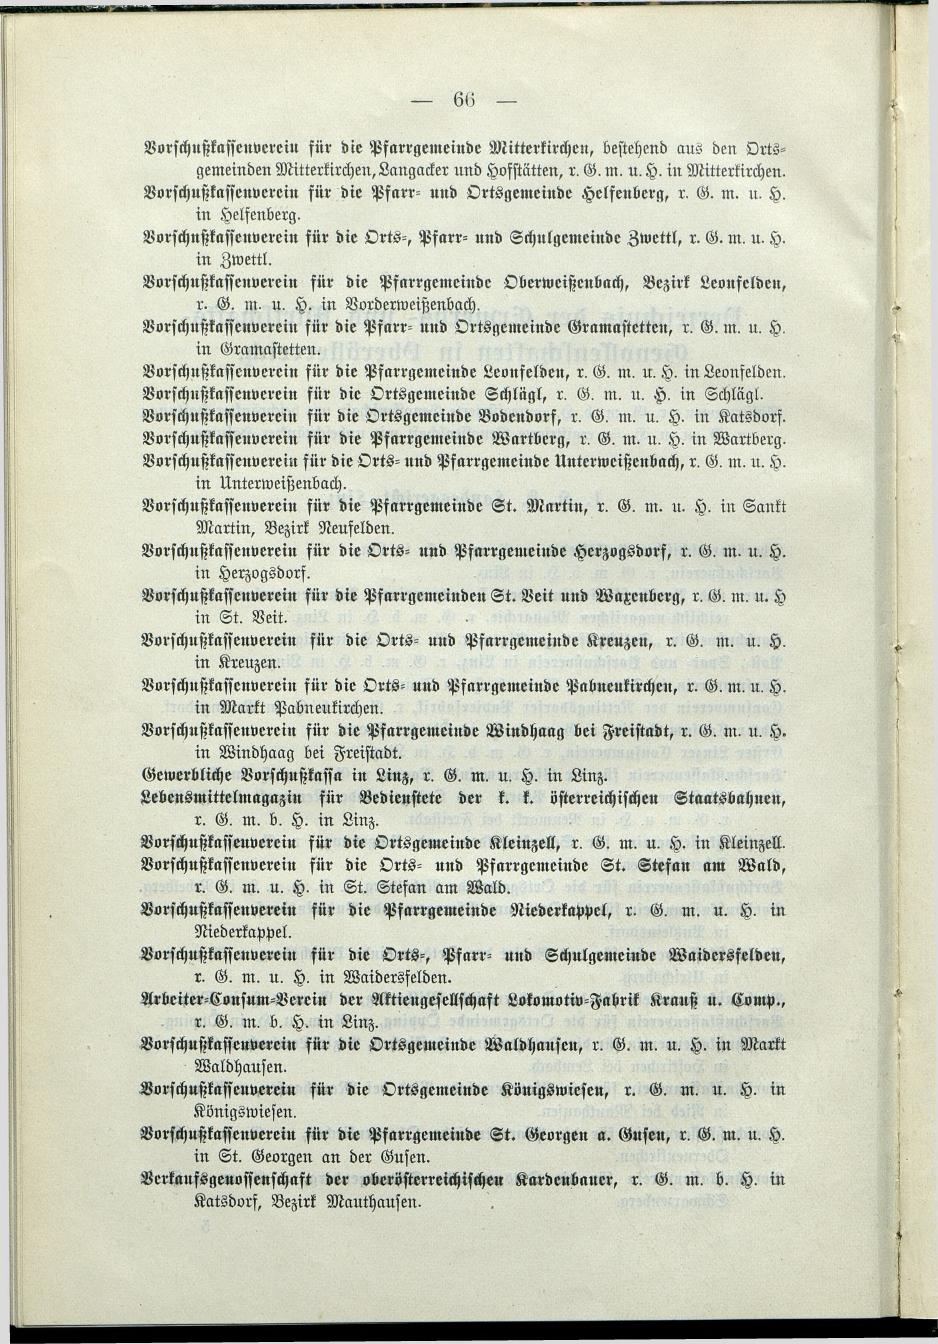 Verzeichnis der protokollierten Firmen und Genossenschaften in Oberösterreich 1908 - Page 70